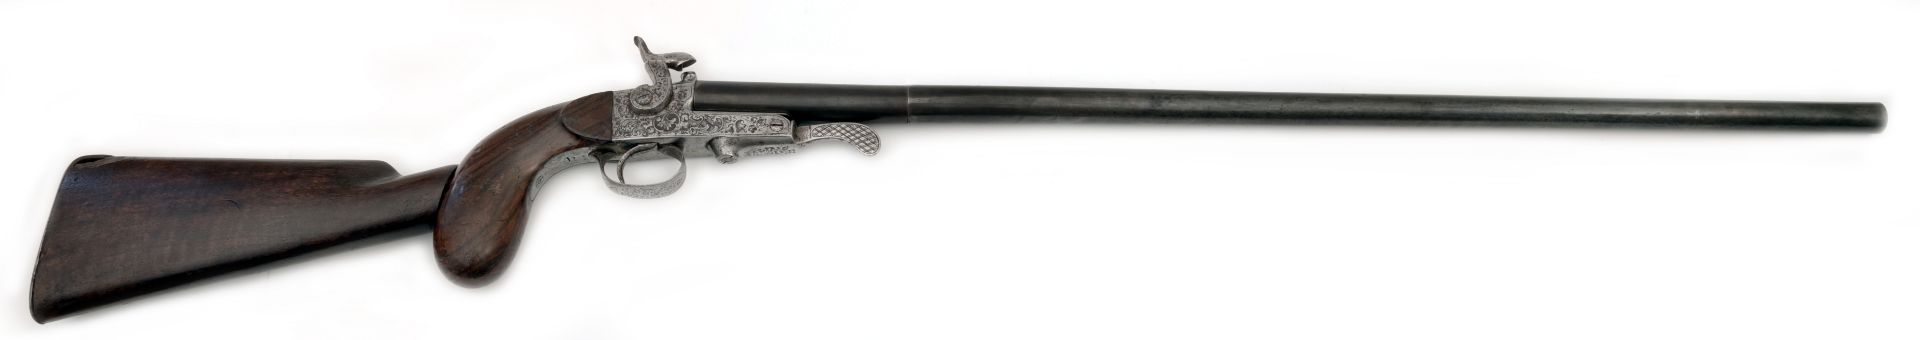 Stiftfeuer-Pistole mit Anschlagschaft und austauschbaren Läufen im Kasten - Bild 4 aus 11